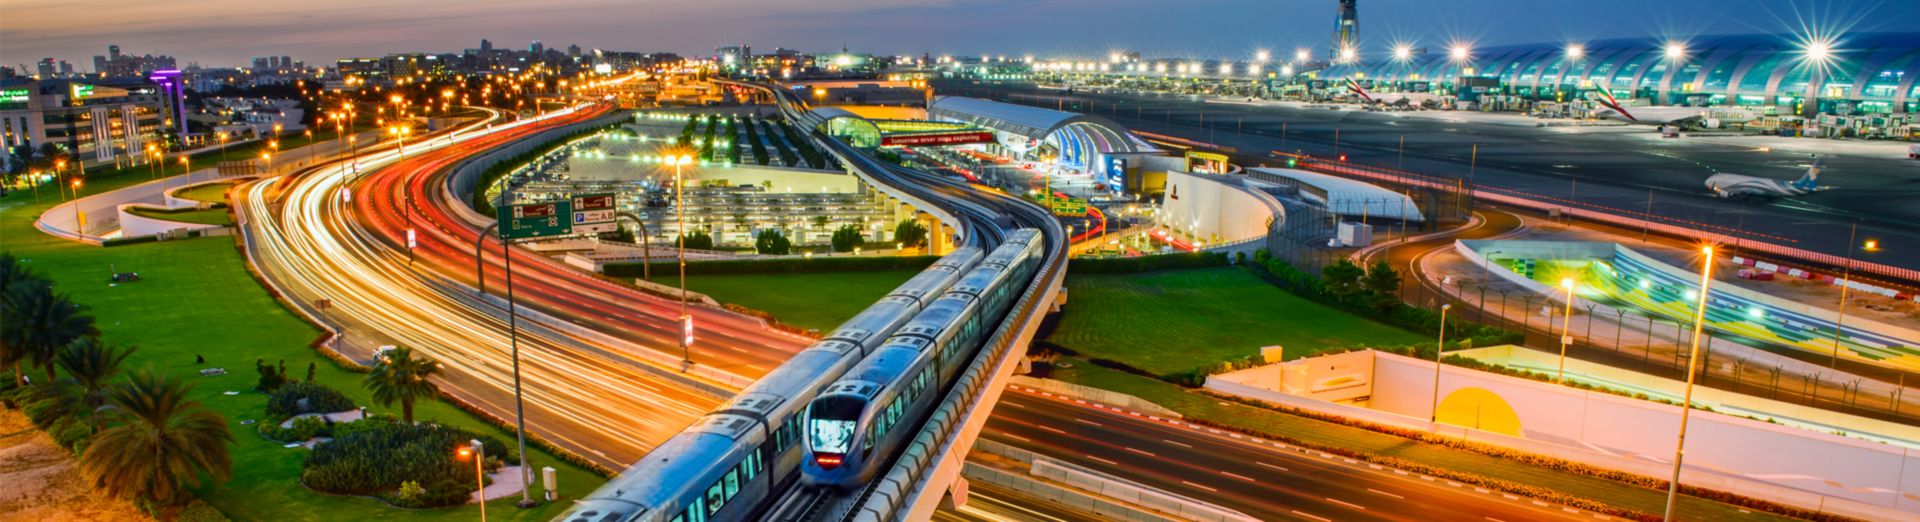 Bild von aneinander vorbeifahrenden U-Bahn-Zügen in Dubai